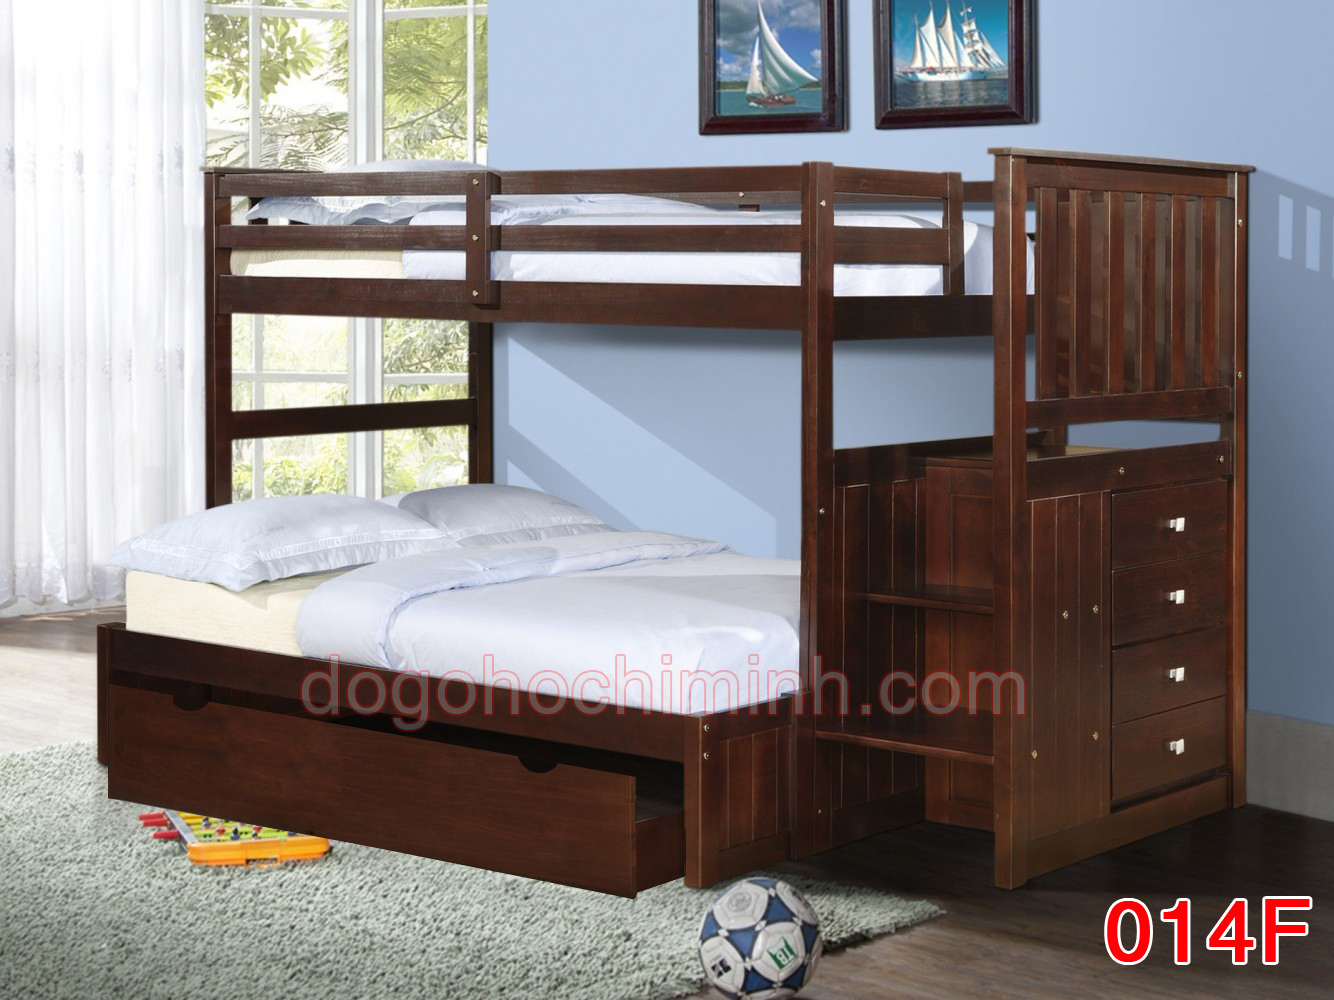 Giường tầng trẻ em bằng gỗ K.Bed 014F